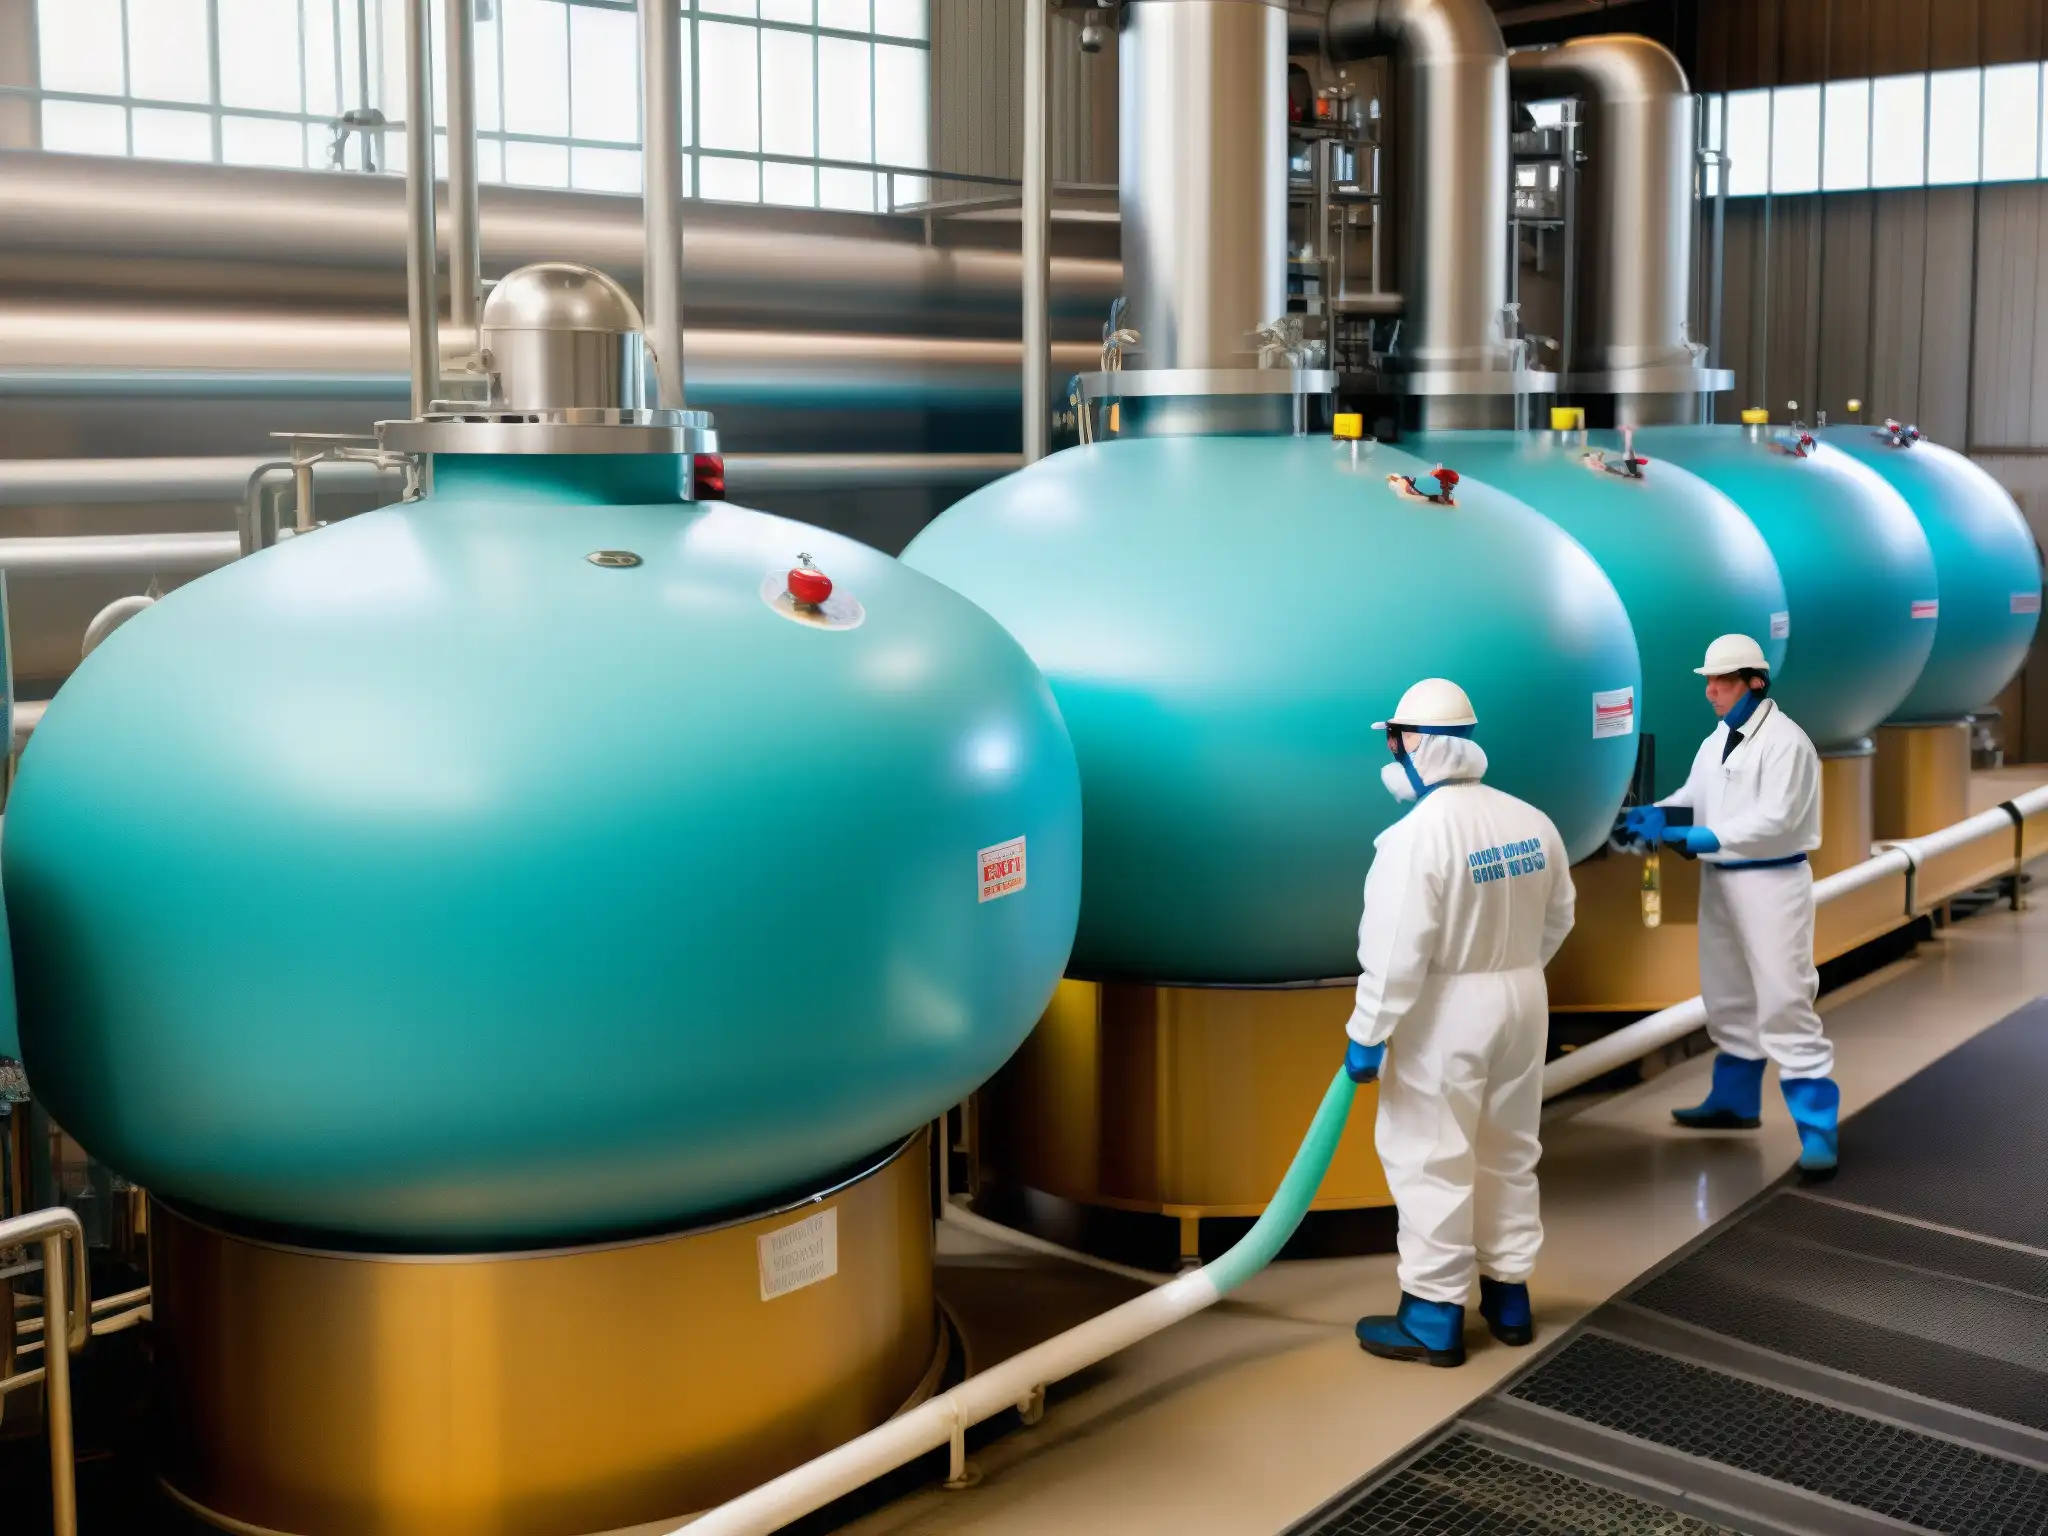 Trabajadores añaden flúor al agua potable en una planta industrial, creando una atmósfera clínica y tecnológica